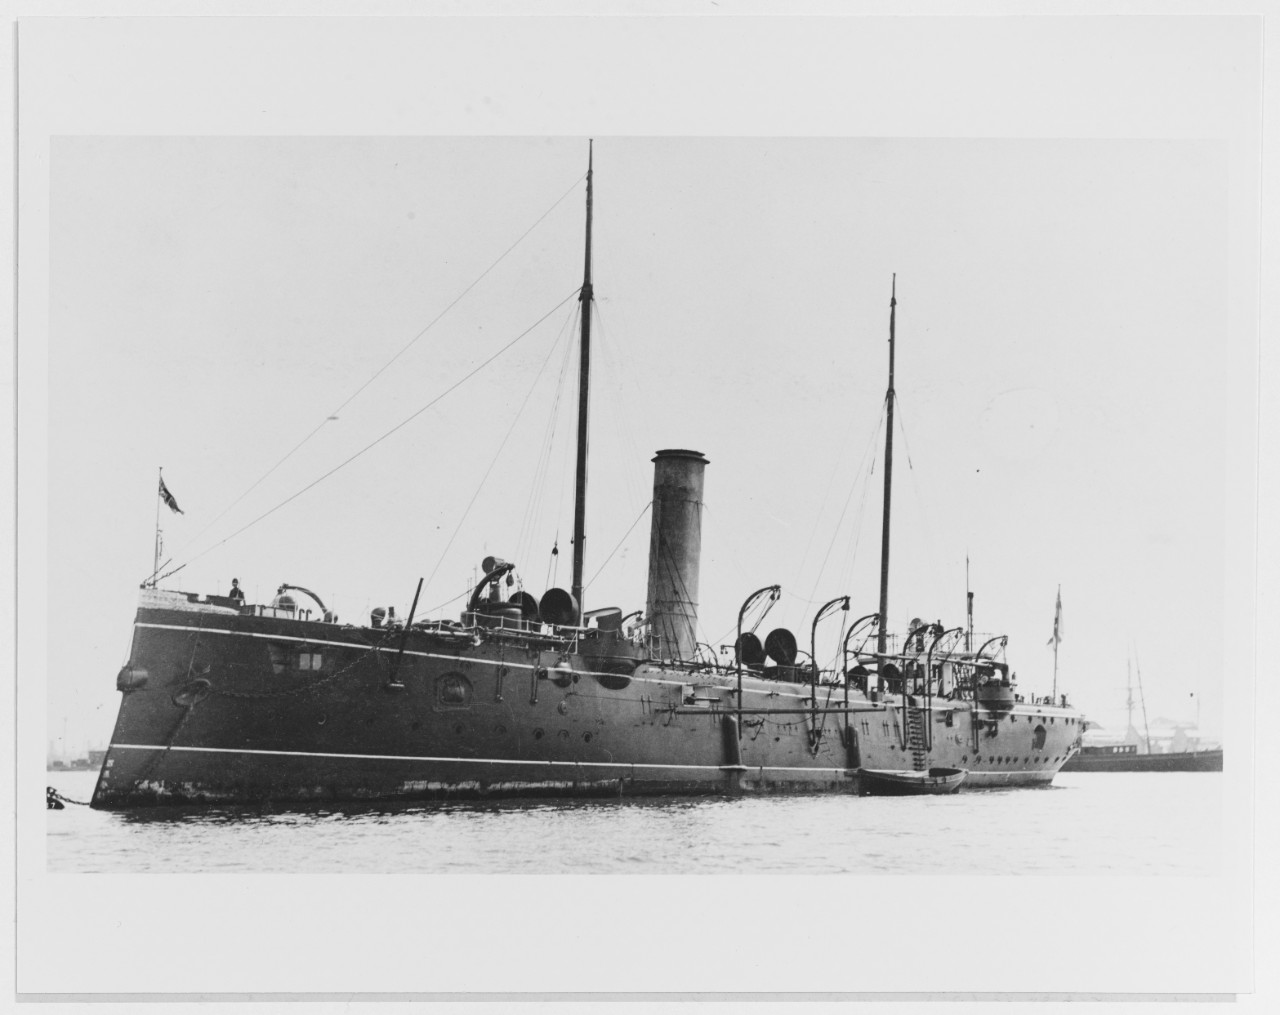 FEARLESS (British torpedo cruiser, 1886-1905)